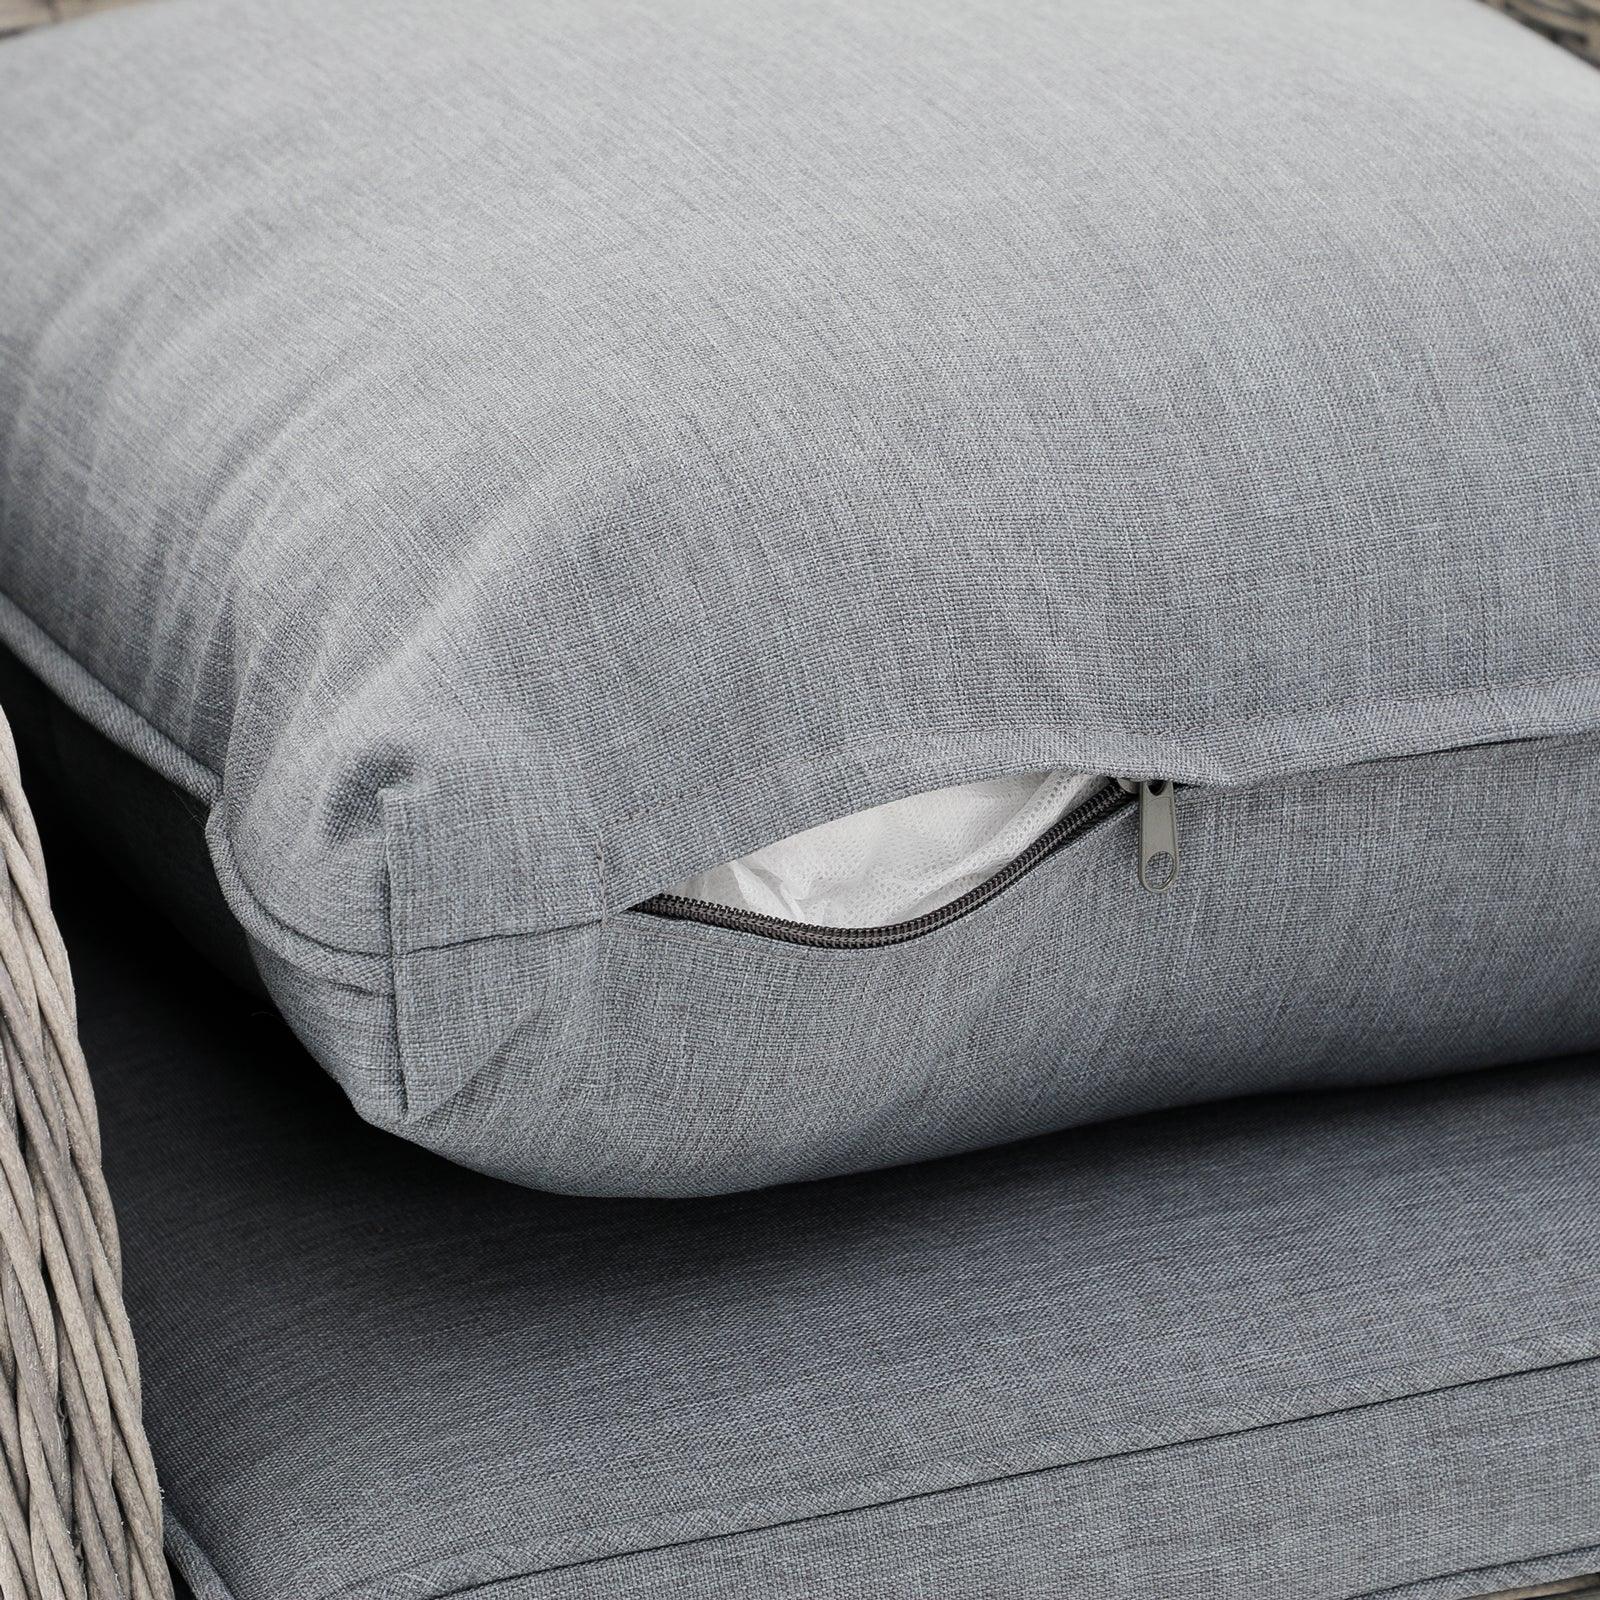 Irati outdoor dining set, grey cushions, cushion detail - Jardina Furniture#color_Grey